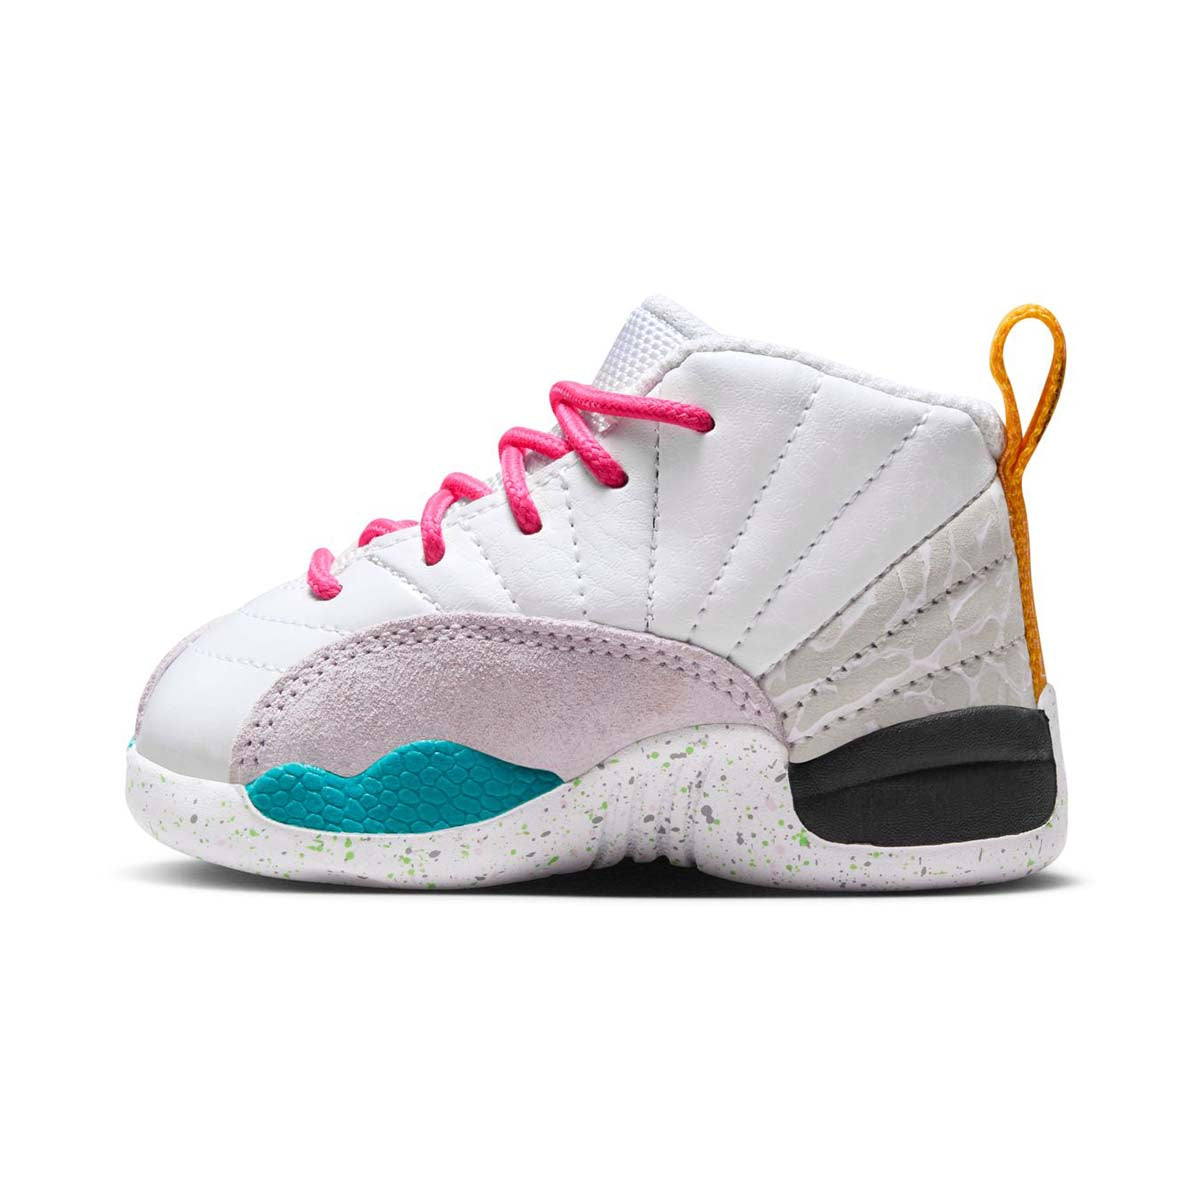 Jordan 12 Retro Baby/Toddler Shoe